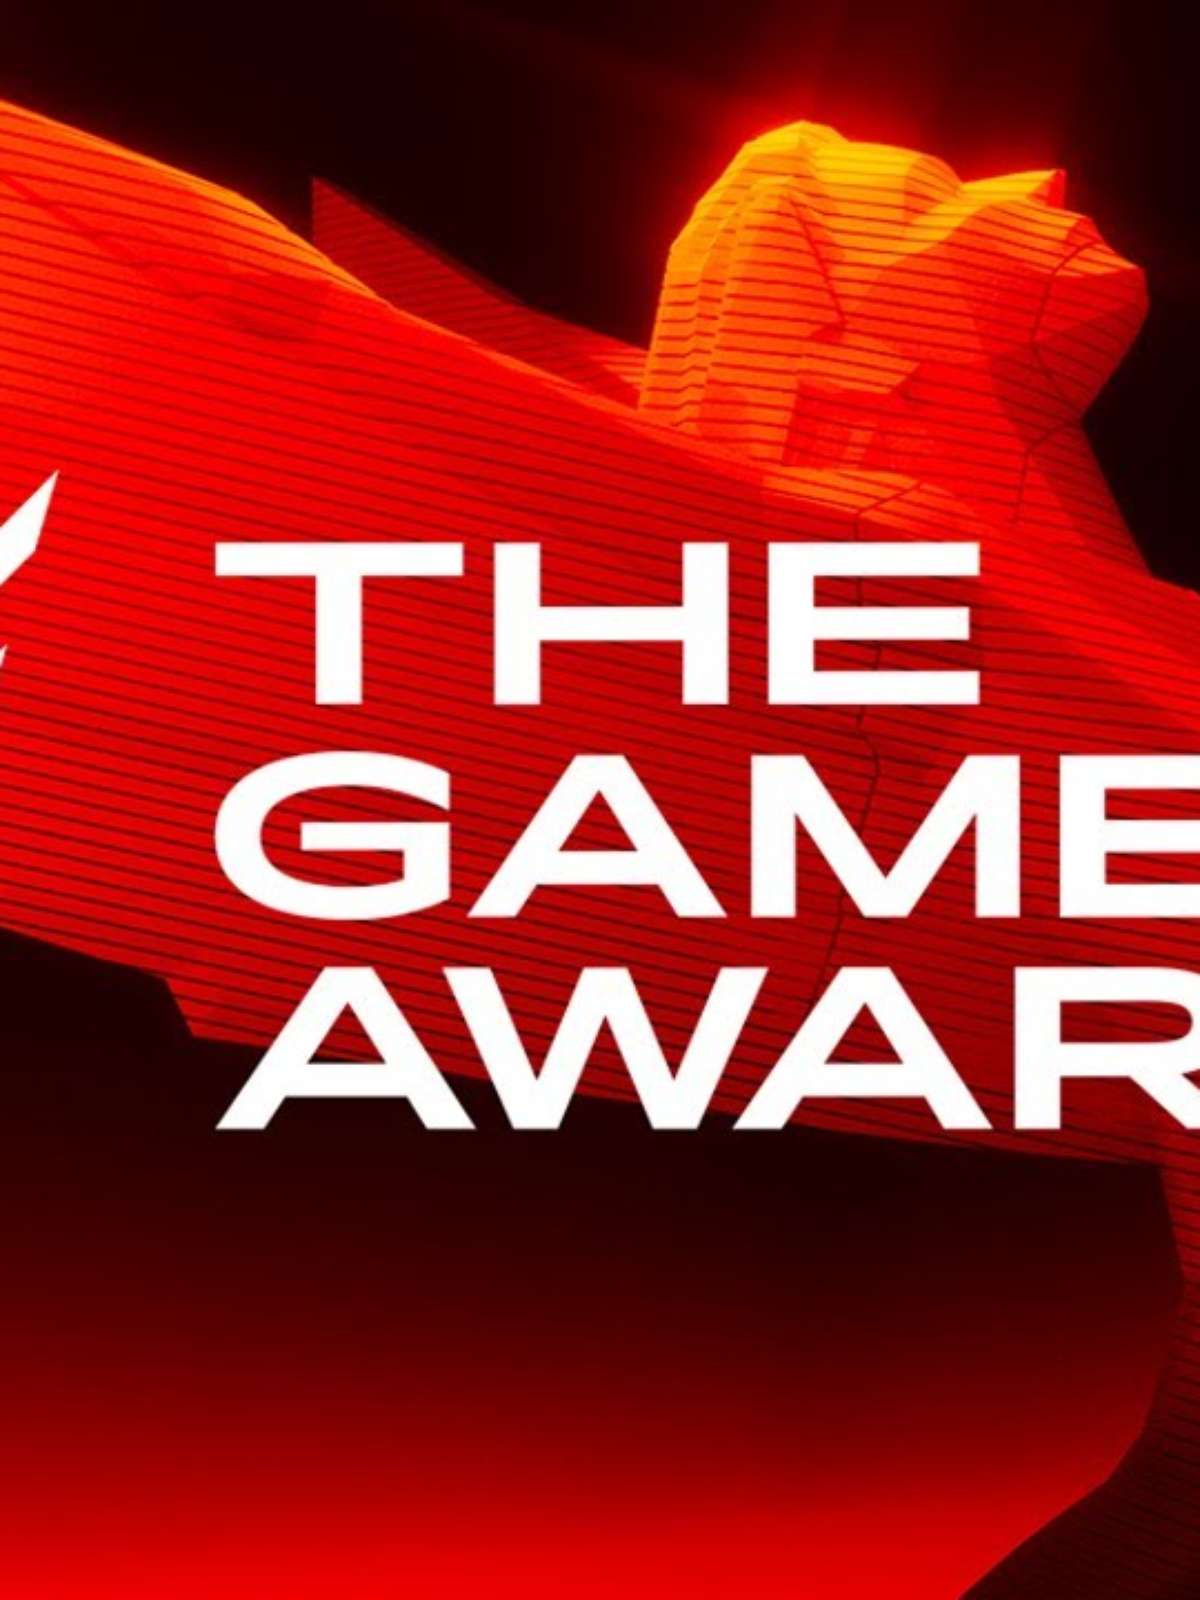 The Game Awards 2023 acontecerá no dia 7 de dezembro - Adrenaline